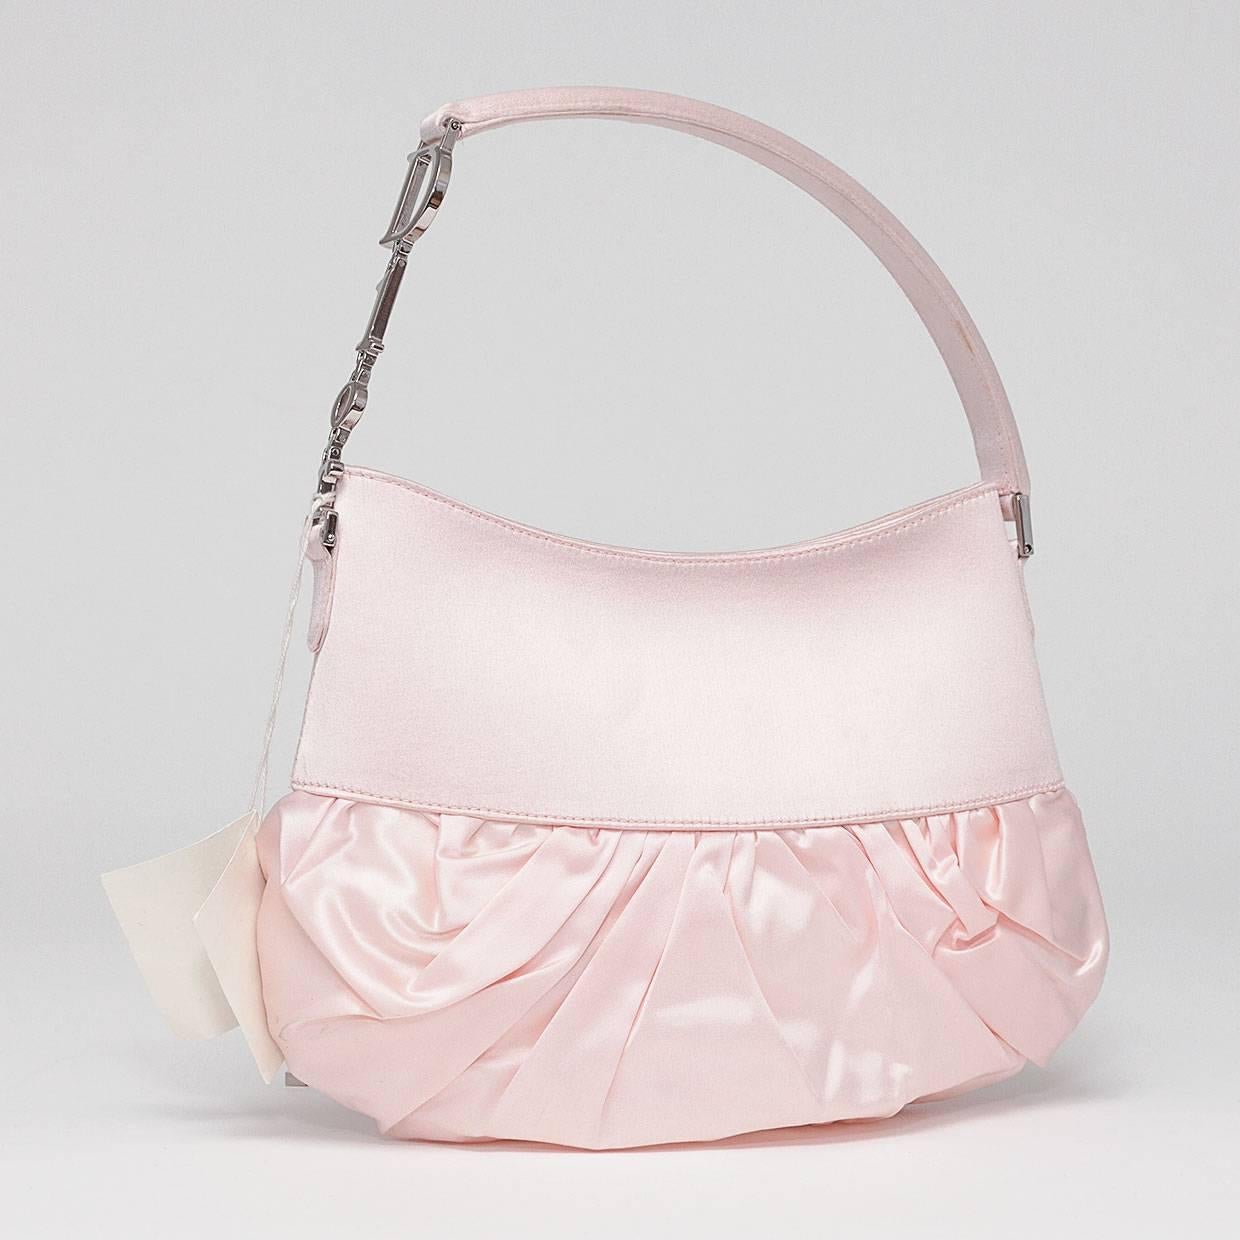 christian dior rose pink satin lace-up ballet evening shoulder bag